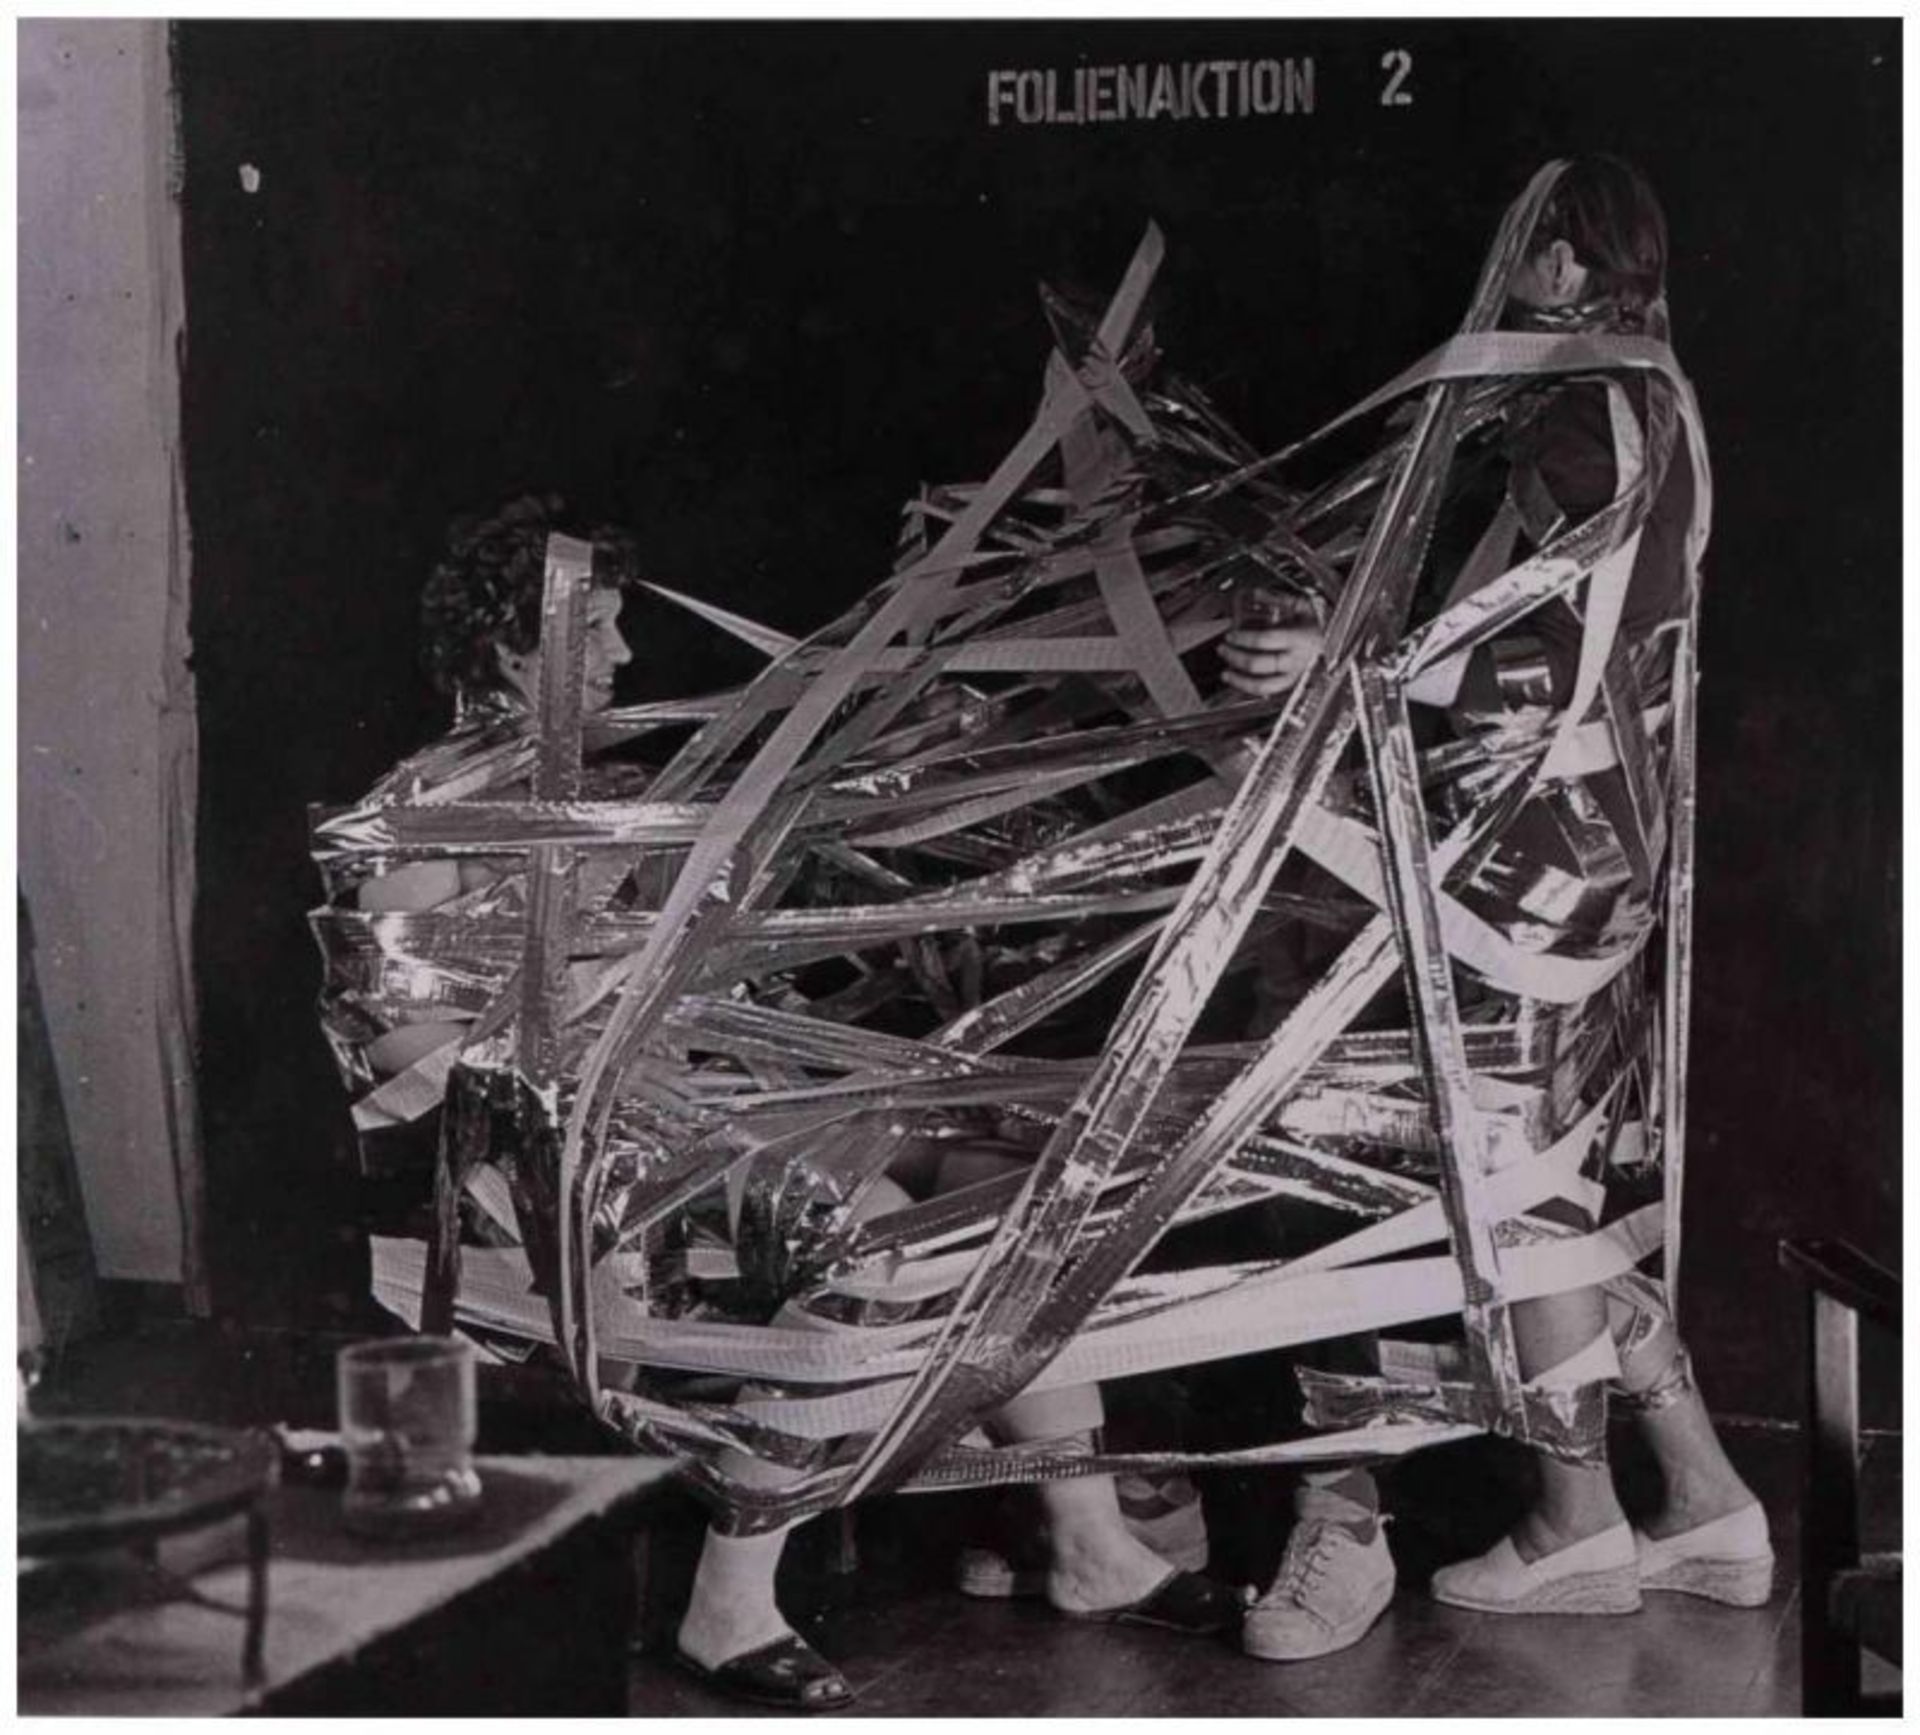 Klaus TOBER (1950-1994) - "Folienaktion 2" - Fotografie, 30,1 cm x 40,4 cm, - [...] - Image 2 of 6